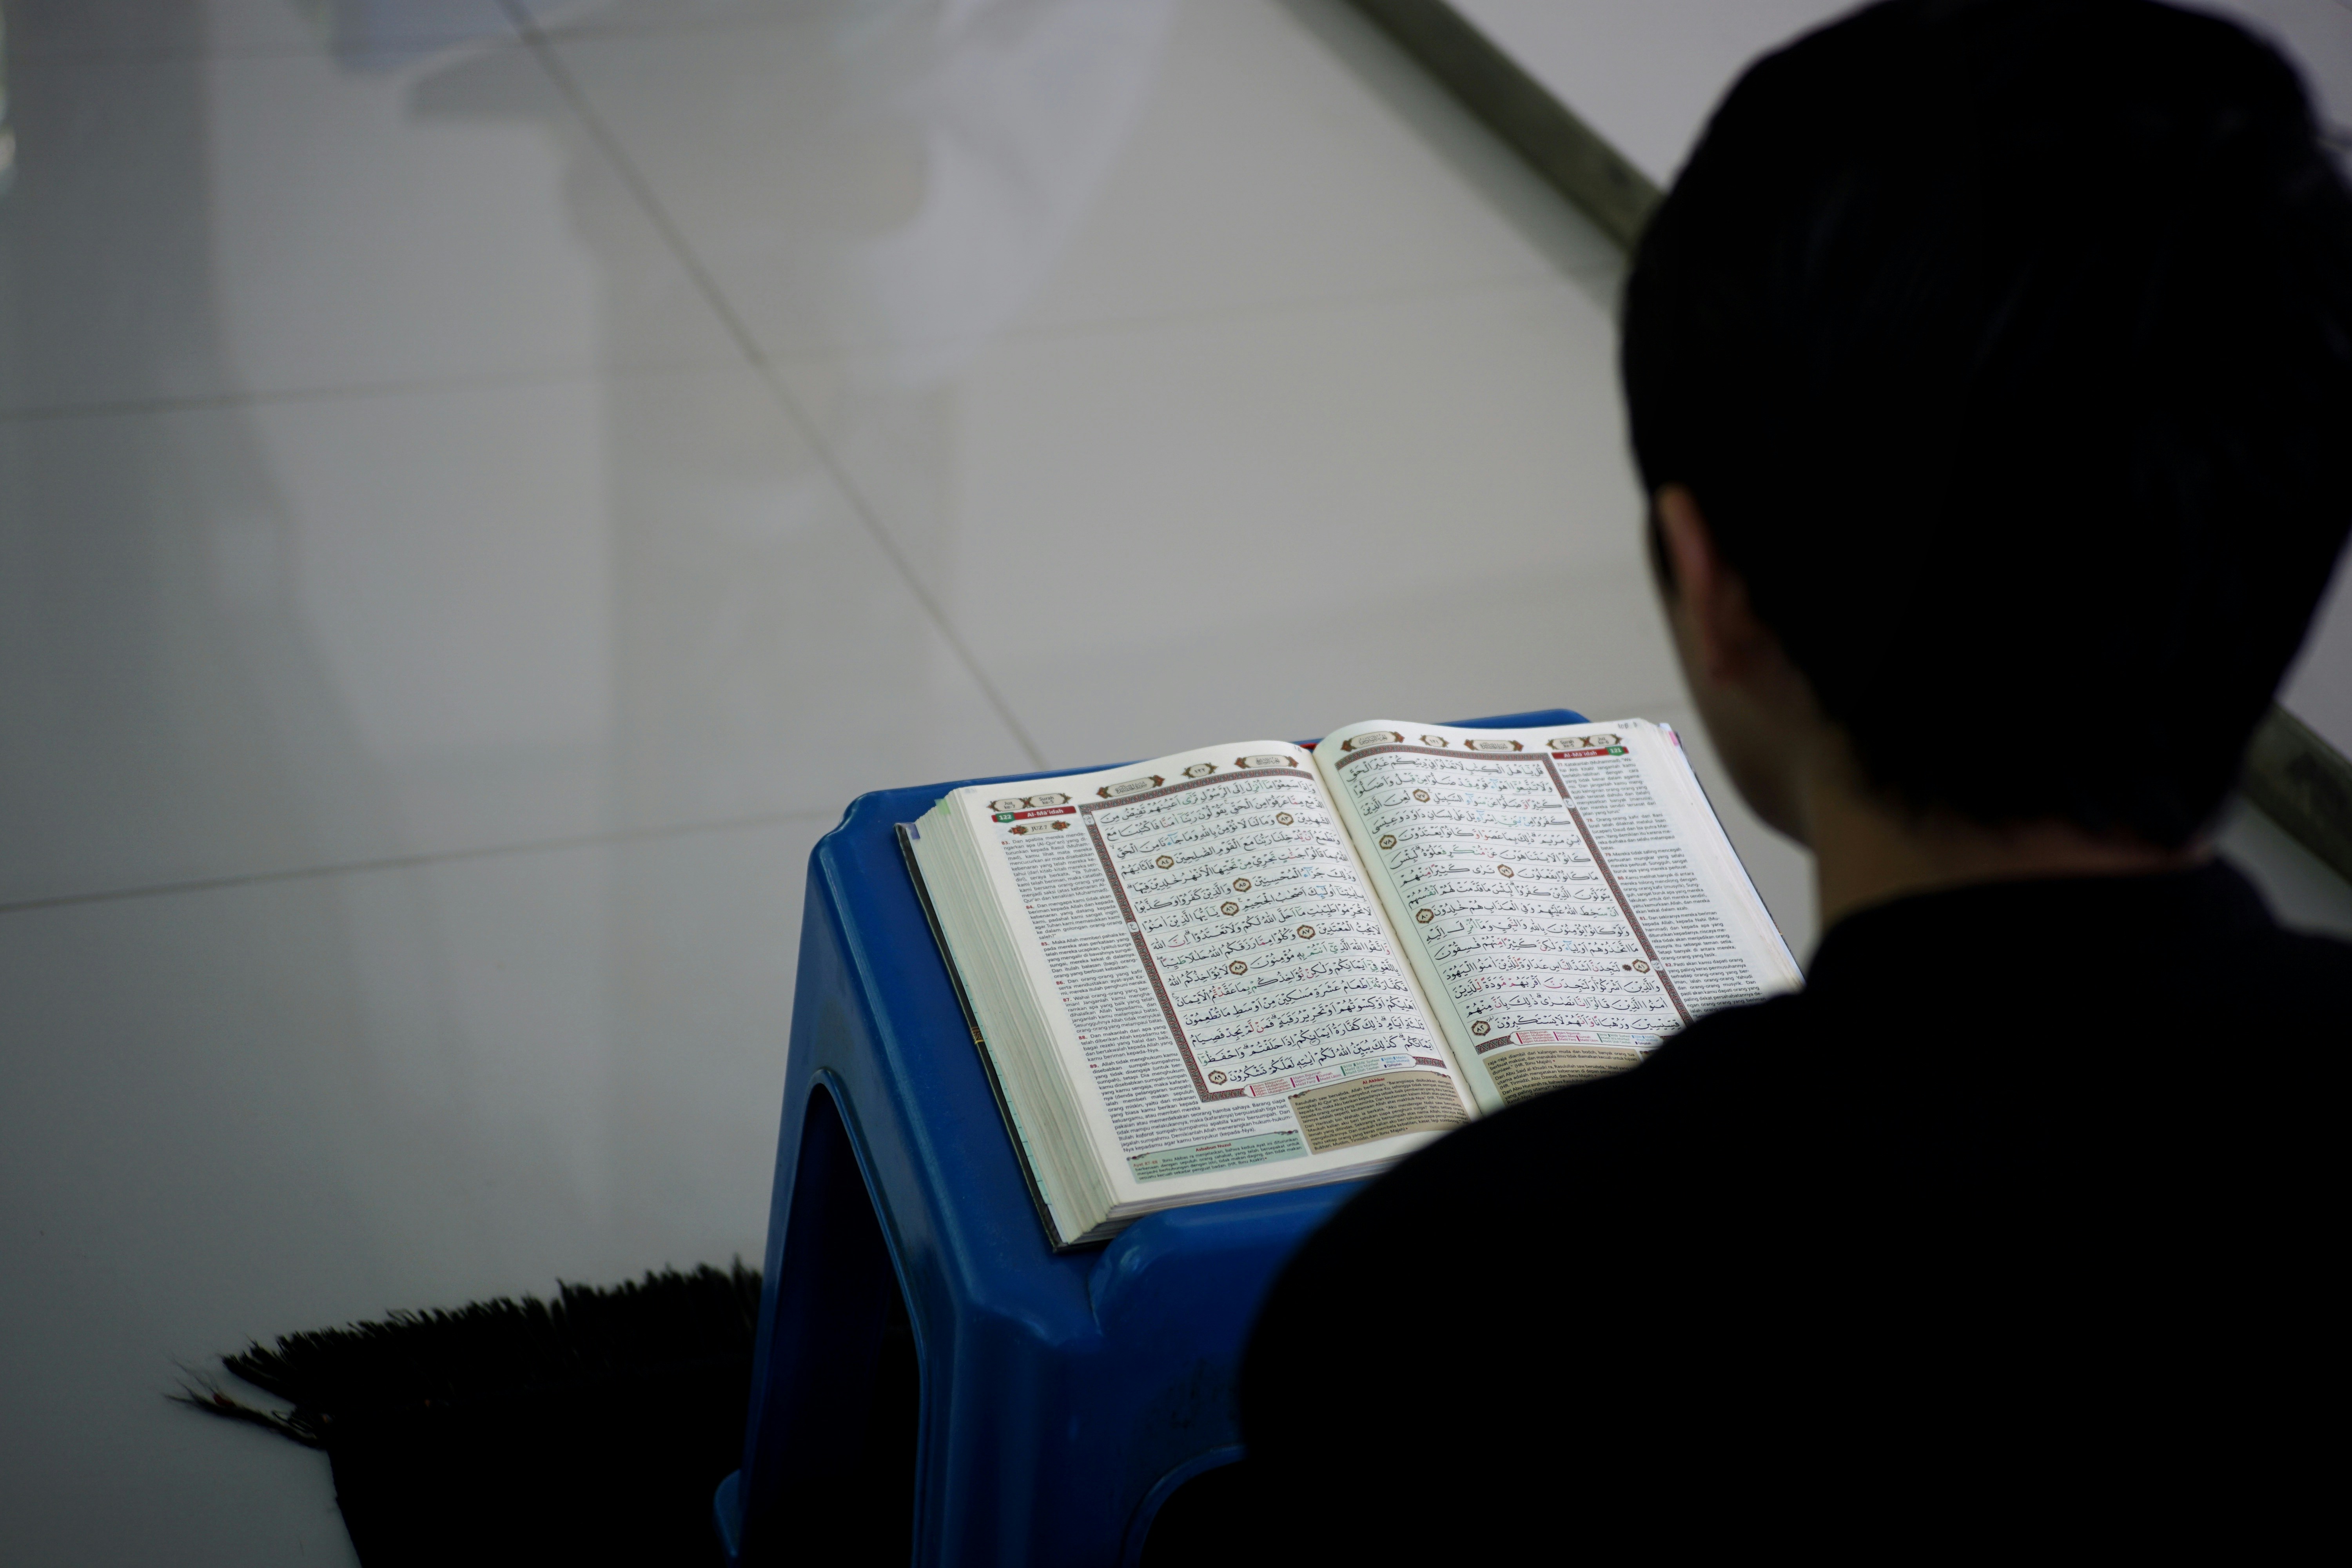 A man reading and memorizing quran